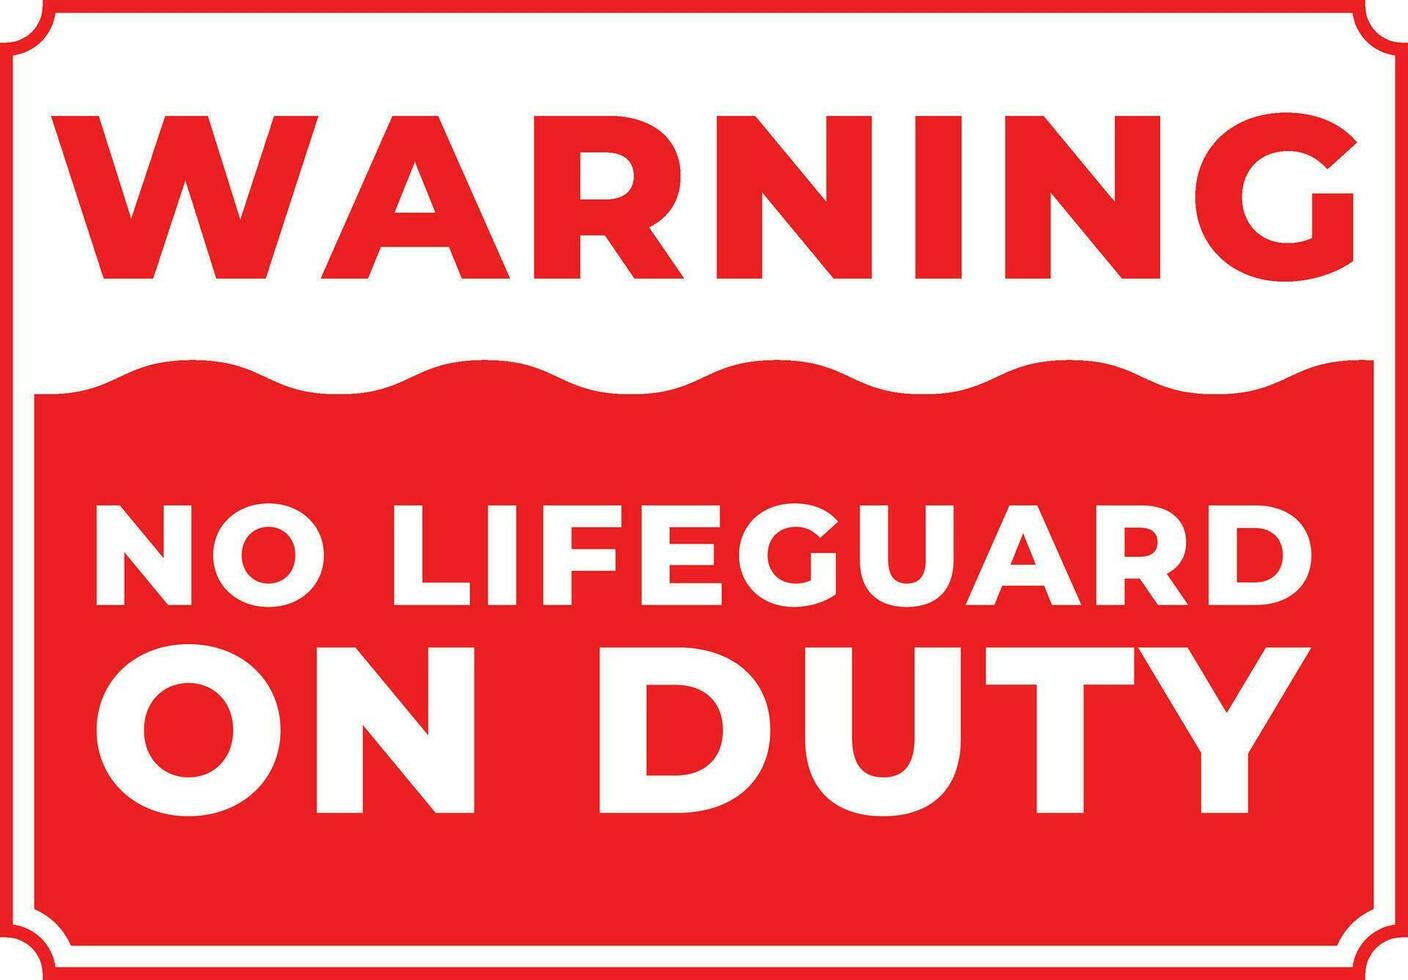 No Lifeguard on Duty Warning Sign vector